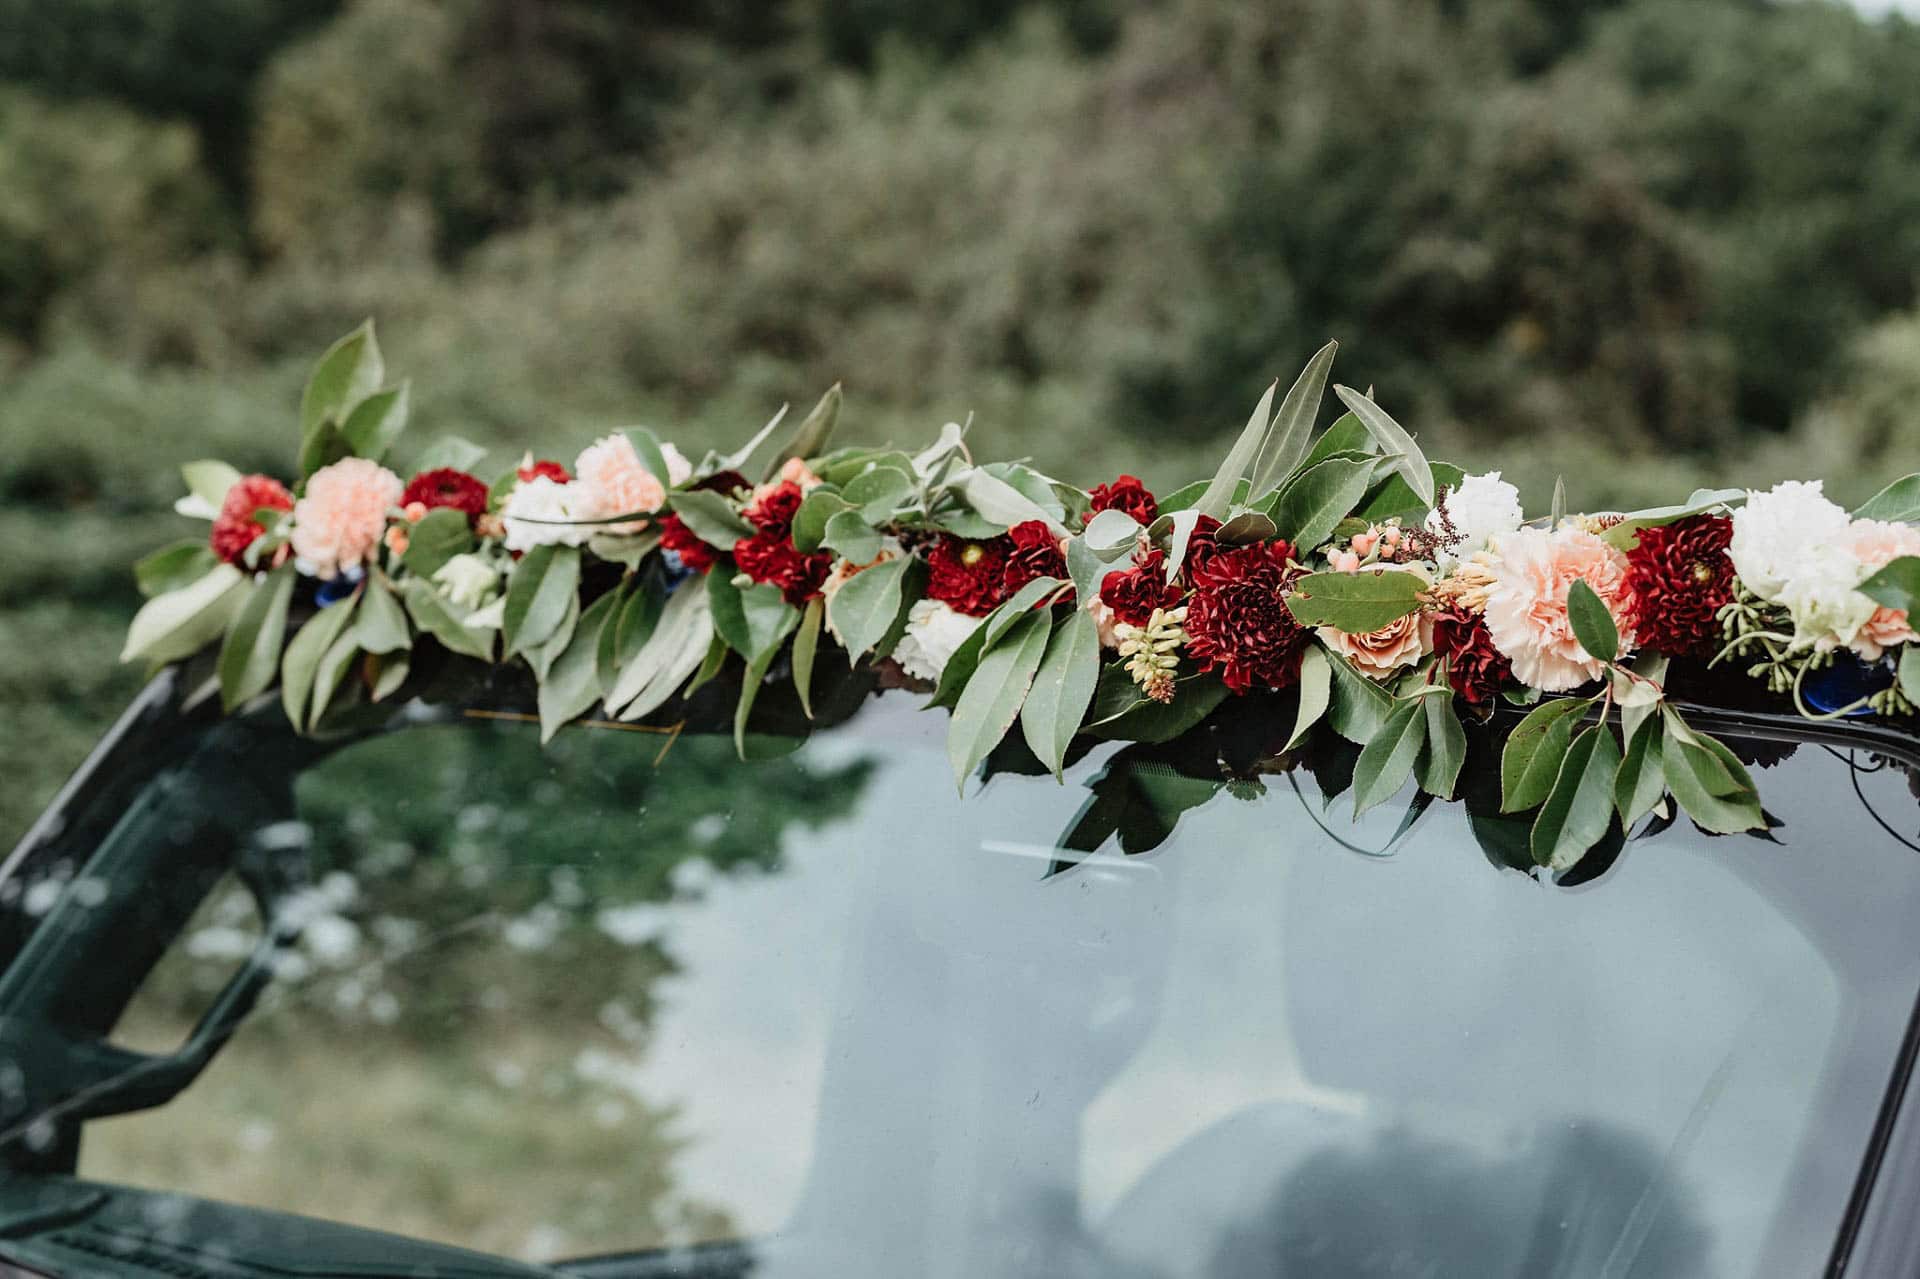 Autoschmuck mit Blumen für die Hochzeit in Rot und Apricot